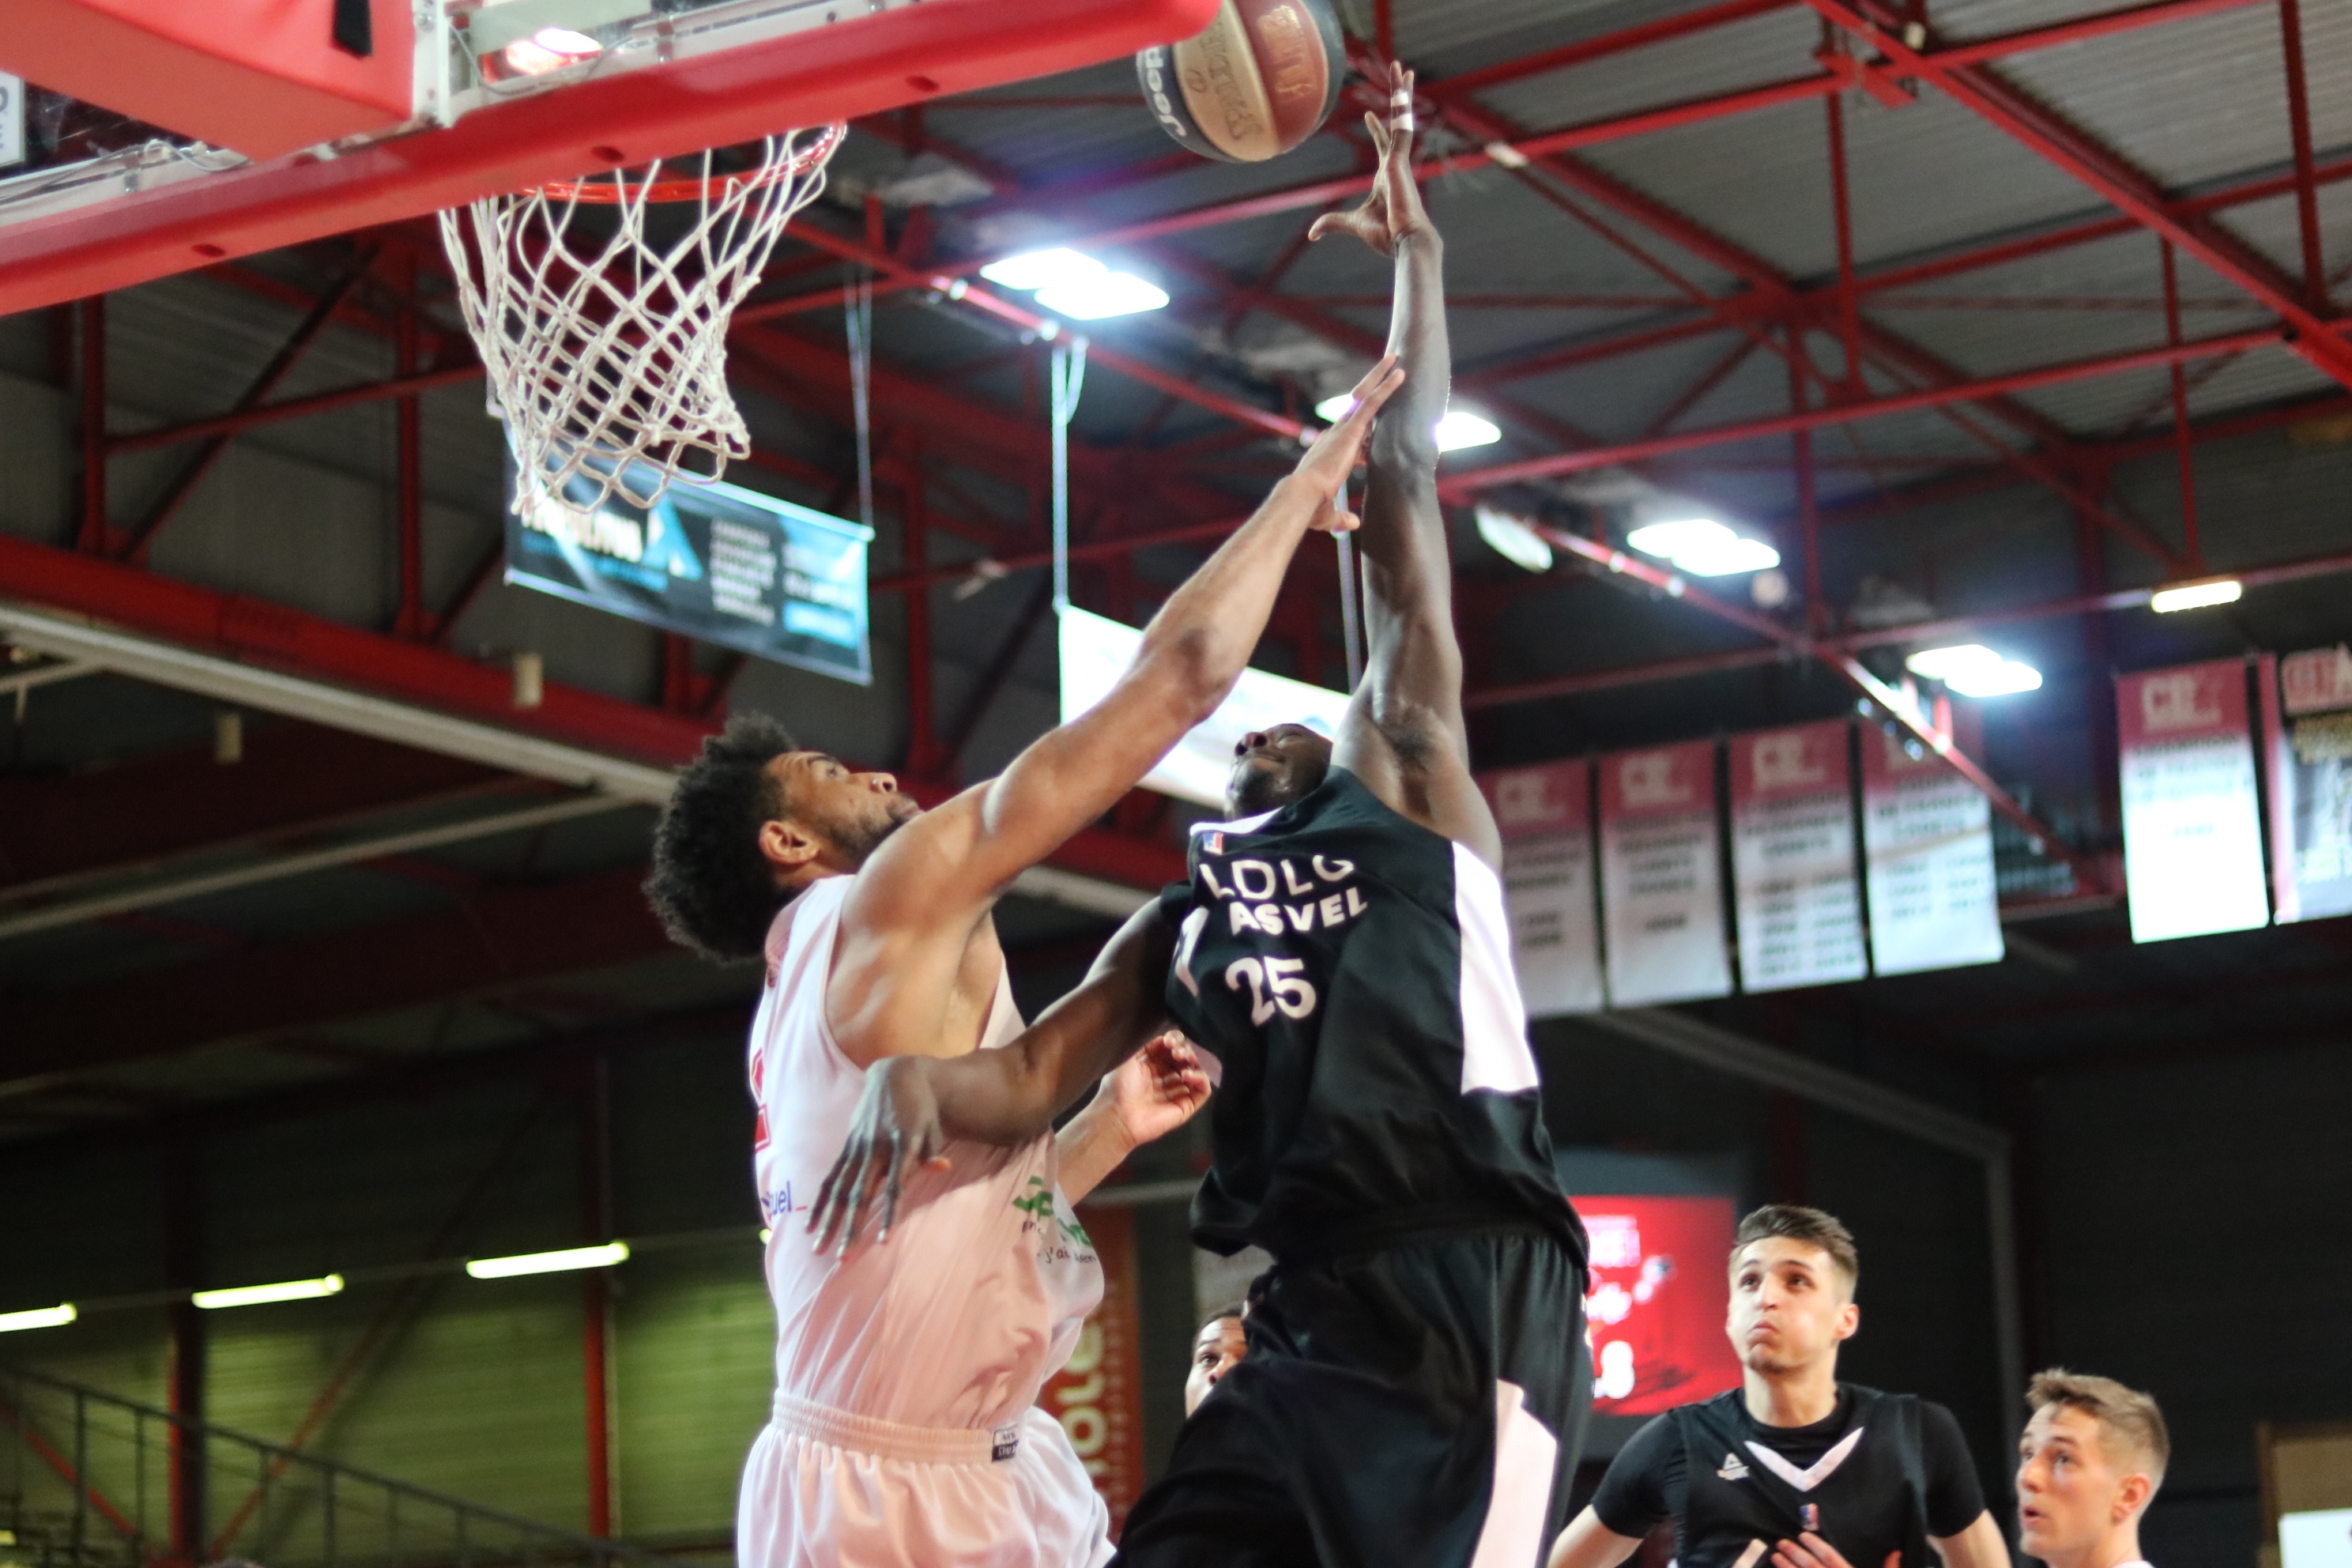 Académie Gautier Cholet Basket U21 - LDLC ASVEL (07-05-19)